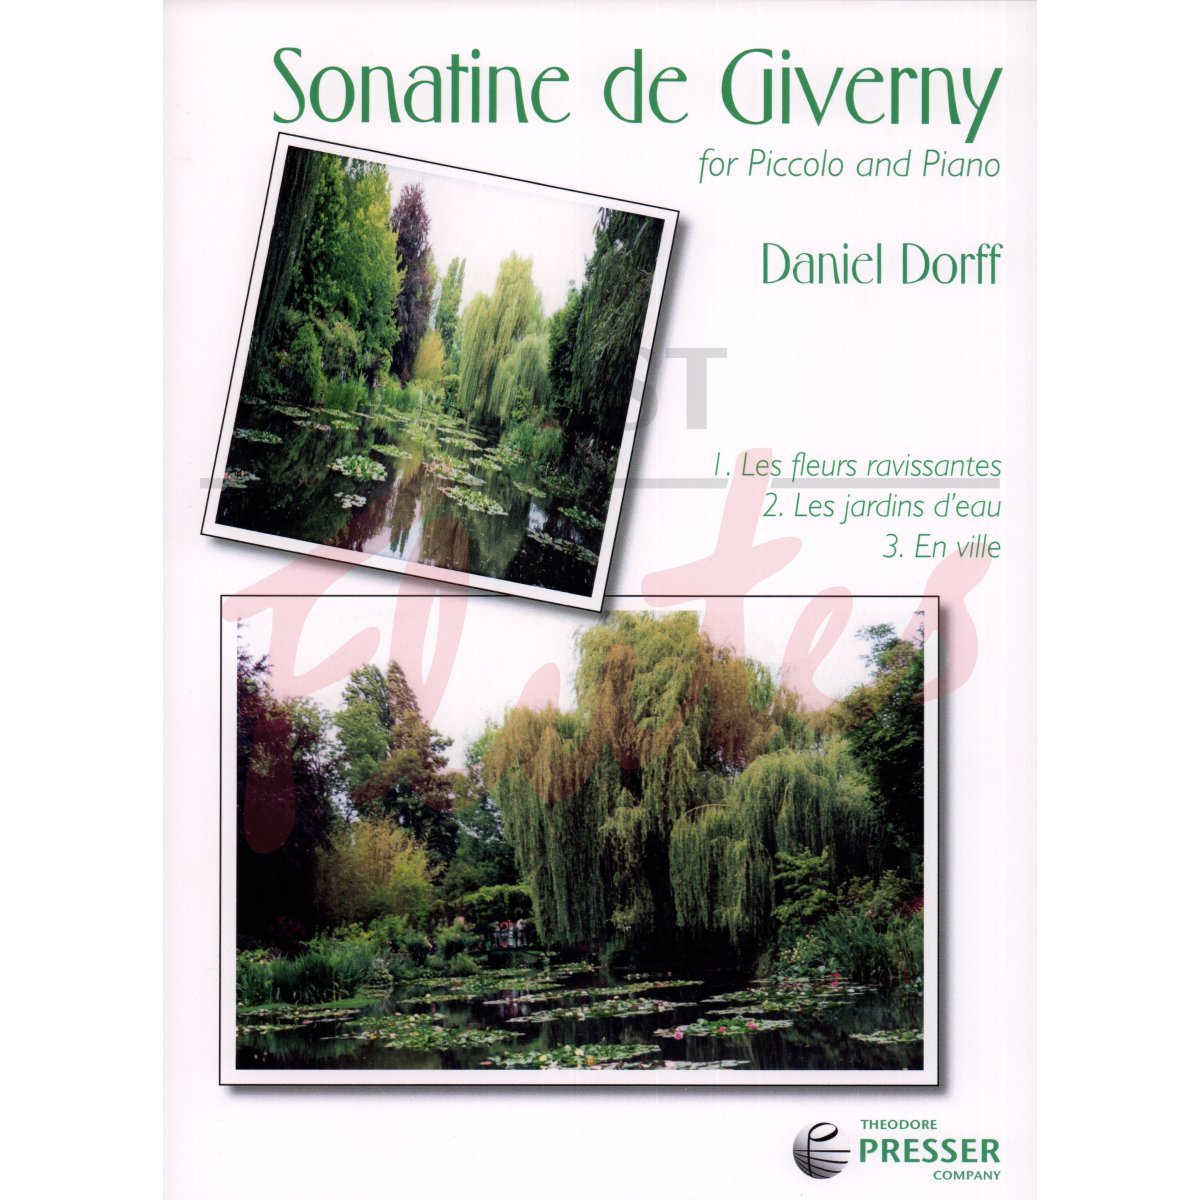 Sonatine de Giverny for Piccolo and Piano